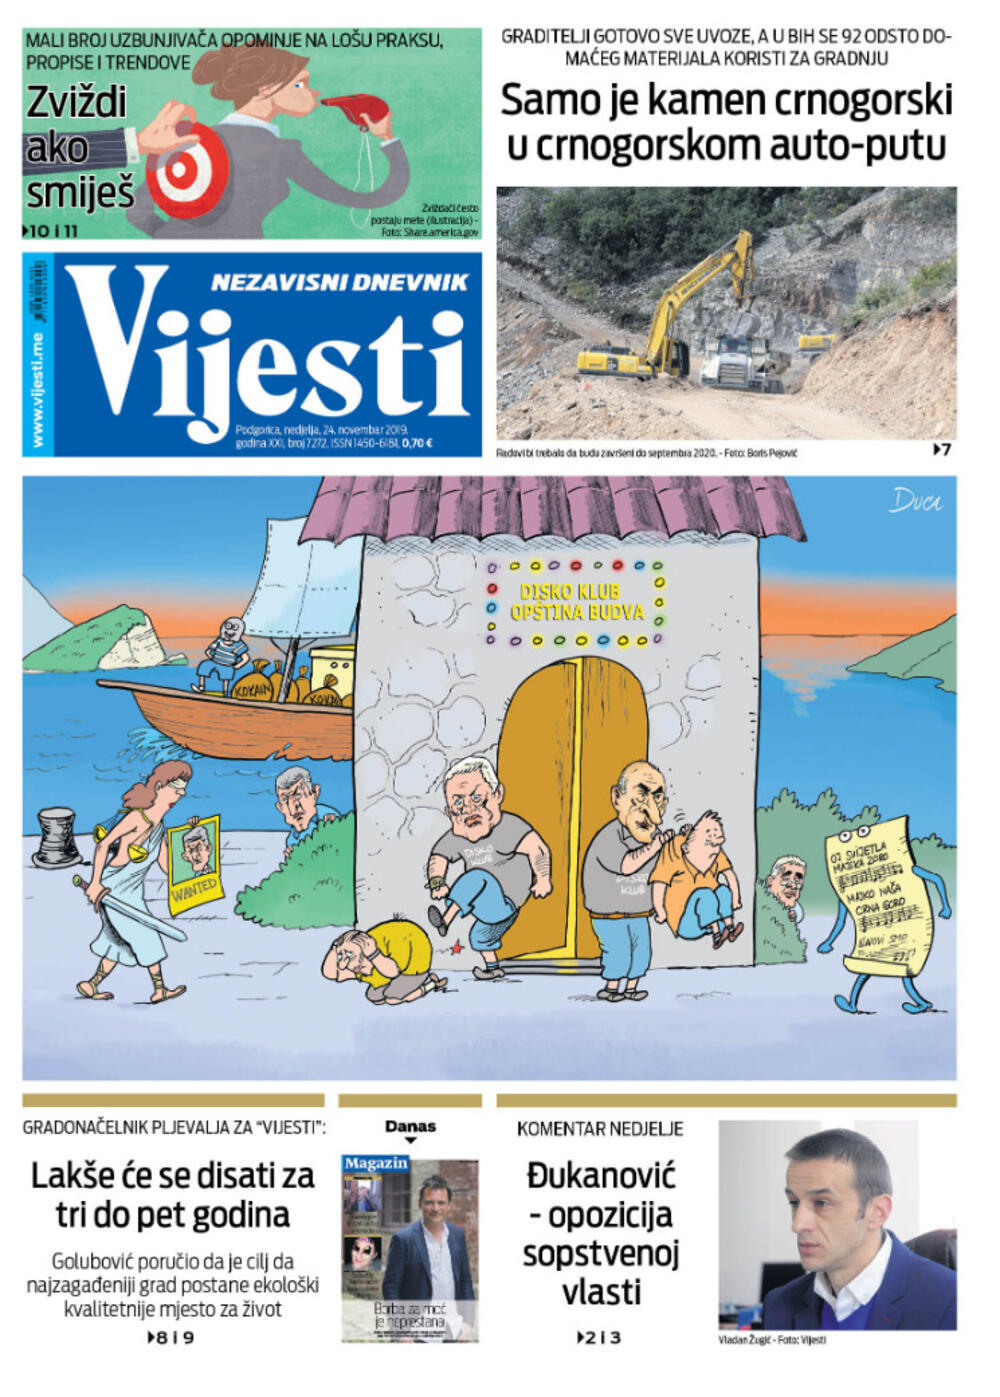 Naslovna strana "Vijesti", 24. novembar 2019.